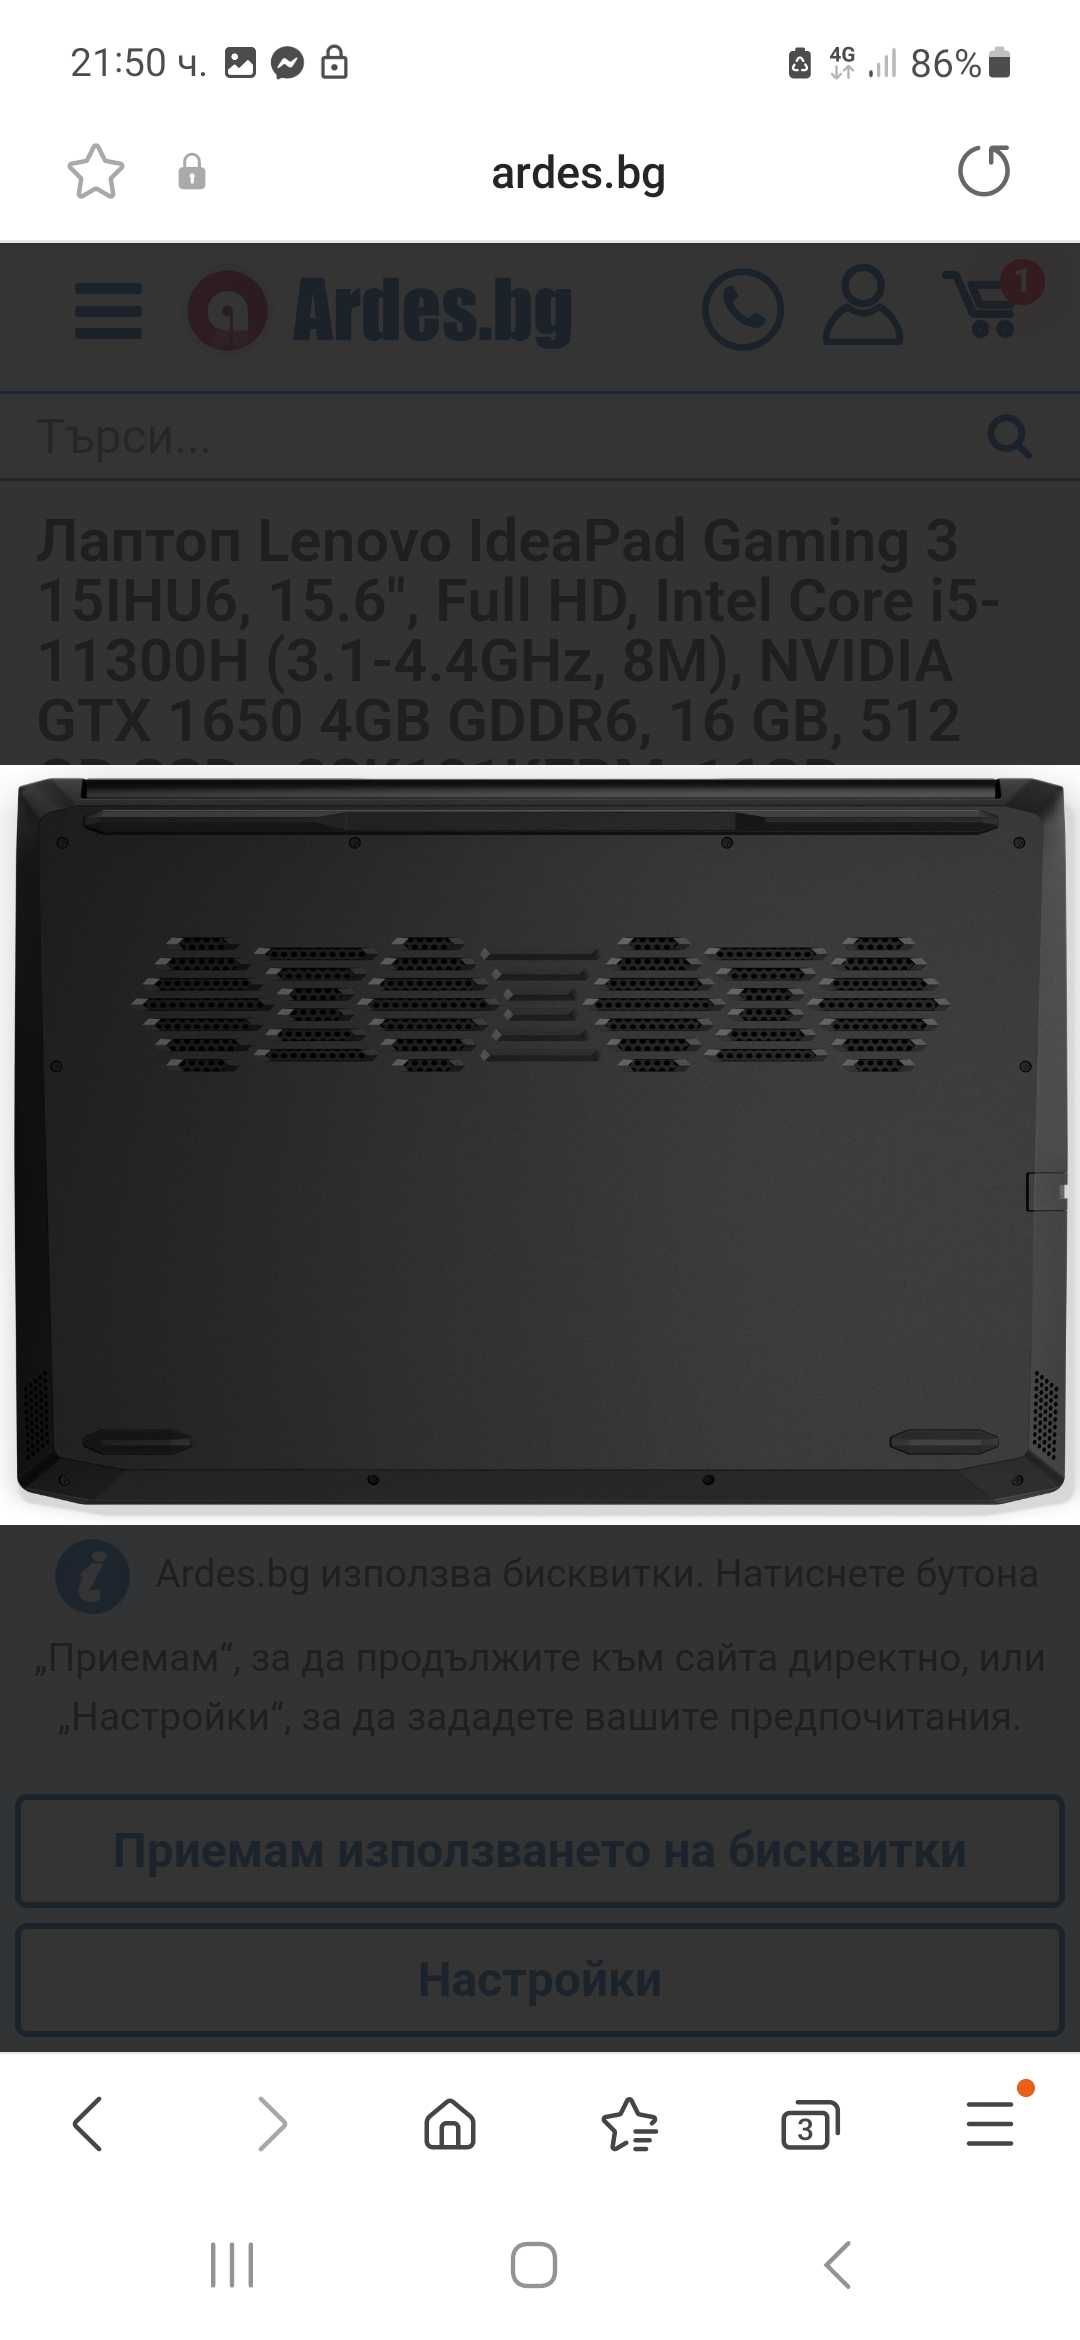 Lenovo ideaPad gaiming 3